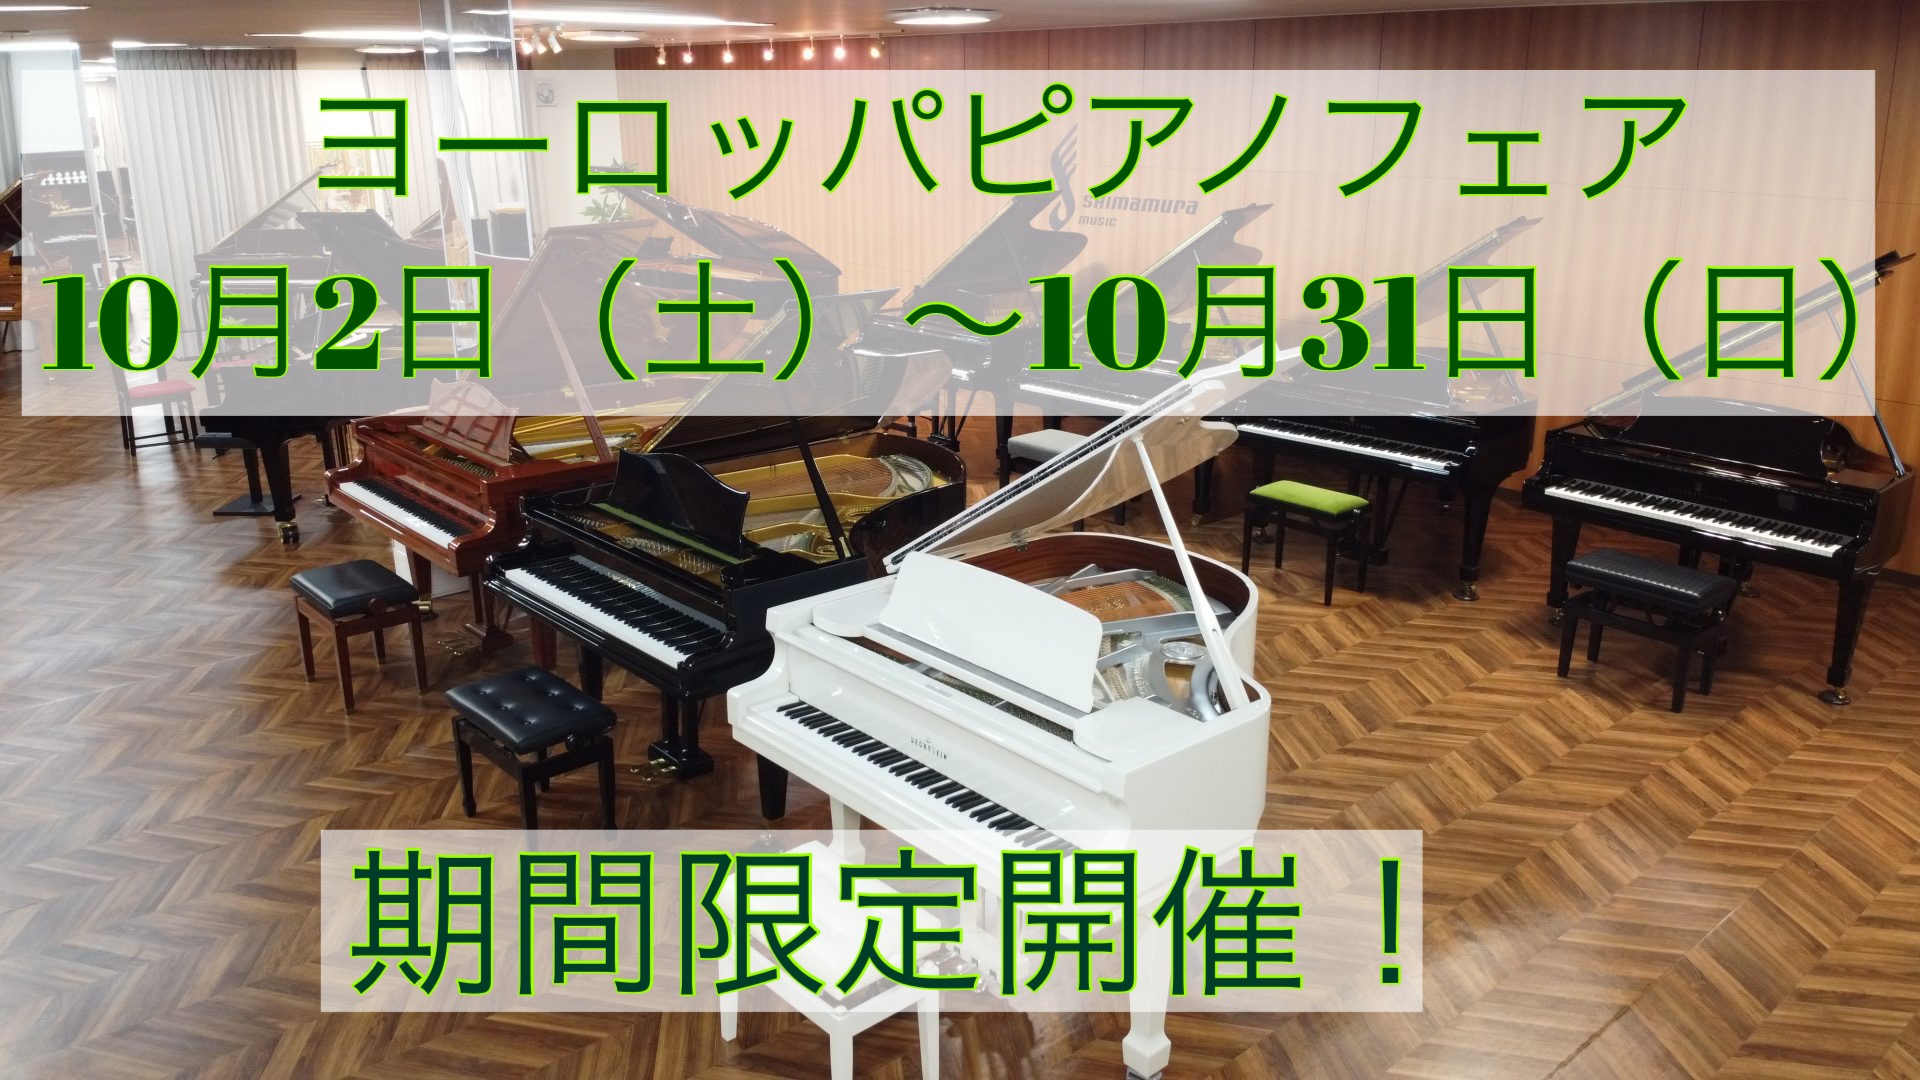 **武蔵浦和駅にございます、島村楽器埼玉ピアノセレクションセンターでございます！ 埼玉ピアノセレクションセンターでは、世界3台ピアノ、スタインウェイやべヒシュタイン・ベーゼンドルファーをはじめ、]]1819年創業の歴史あるザウター、希少性の高いグロトリアンなど、世界を代表する様々な個性を持ったピアノ […]